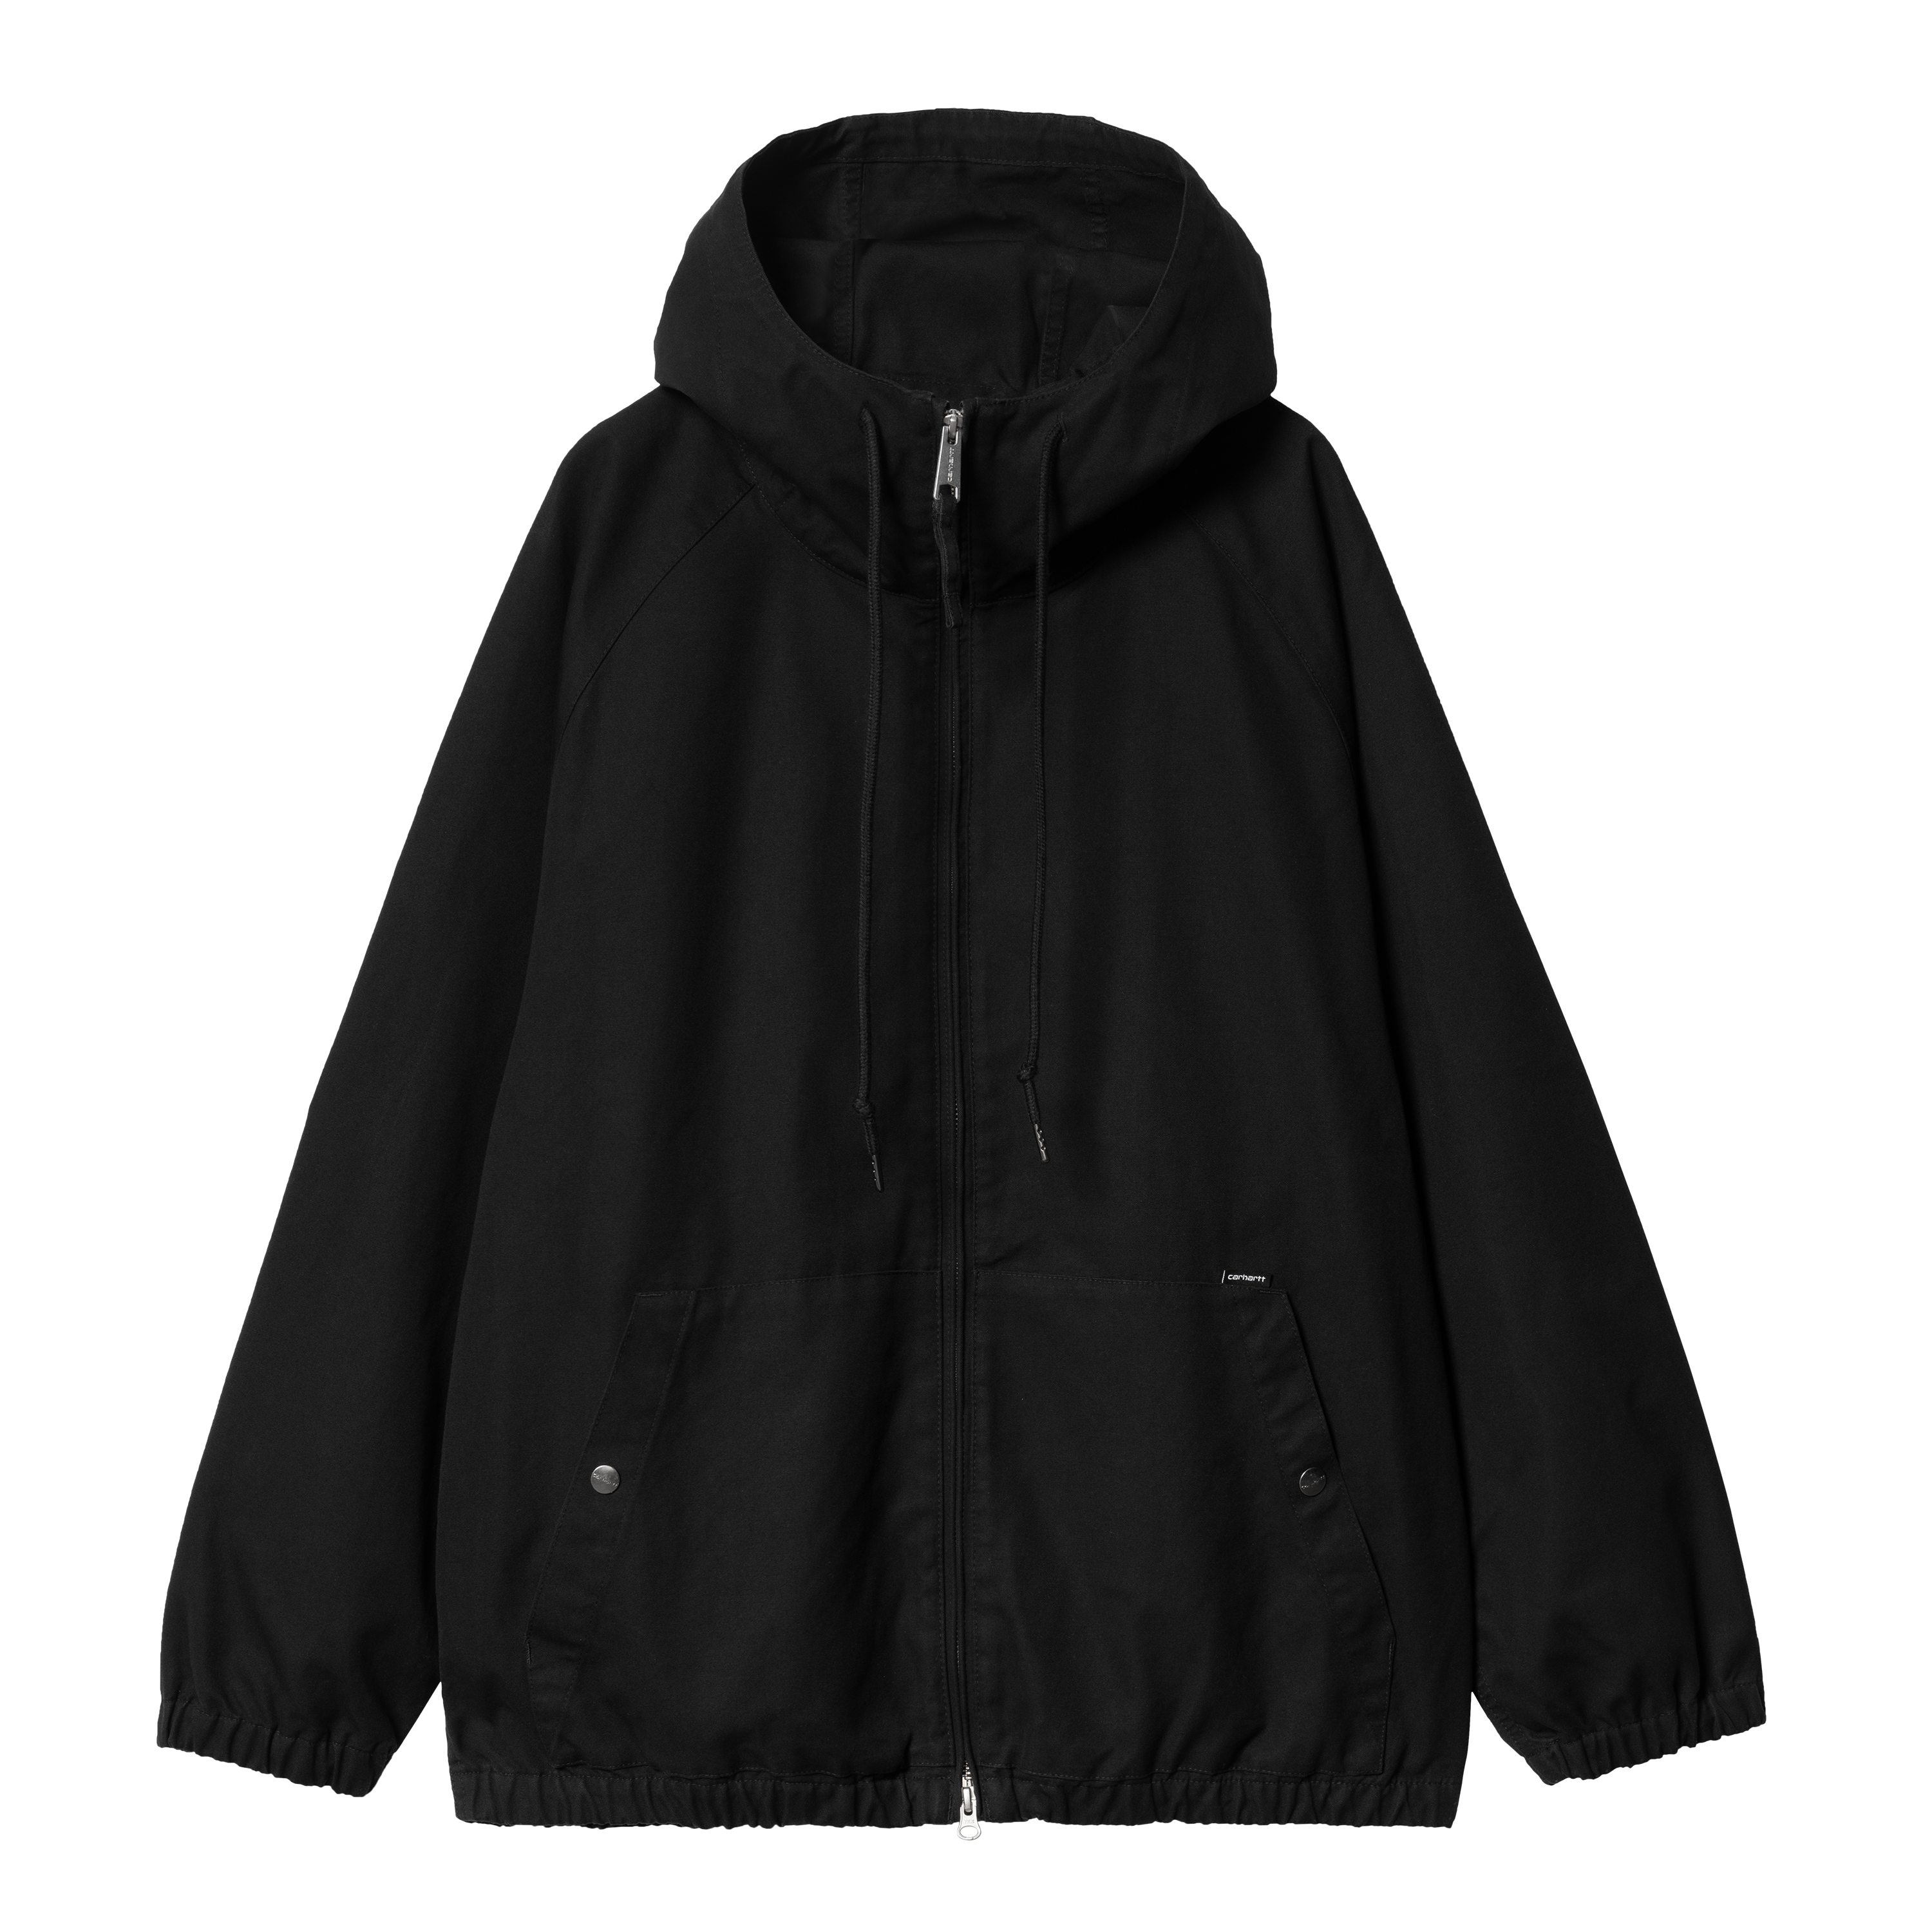 Carhartt WIP Madock Jacket in Black